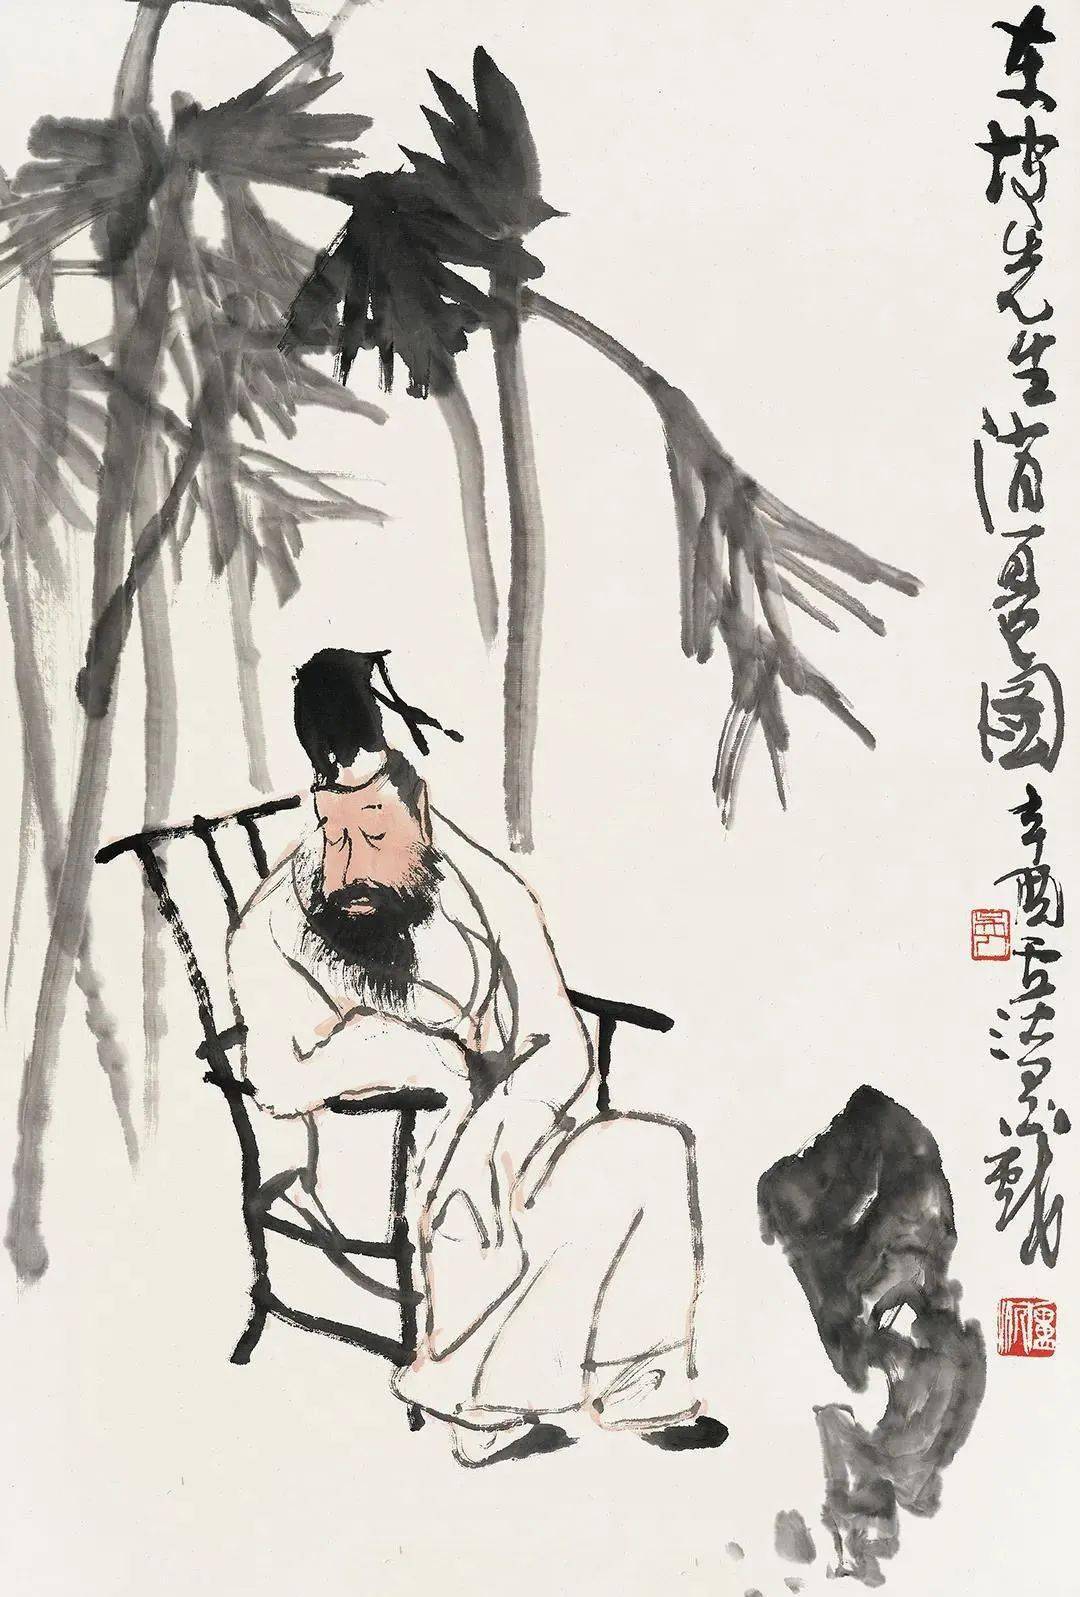 卢沉(1935—2004 )中国著名国画家江苏苏州人早年在苏州美术专科学校